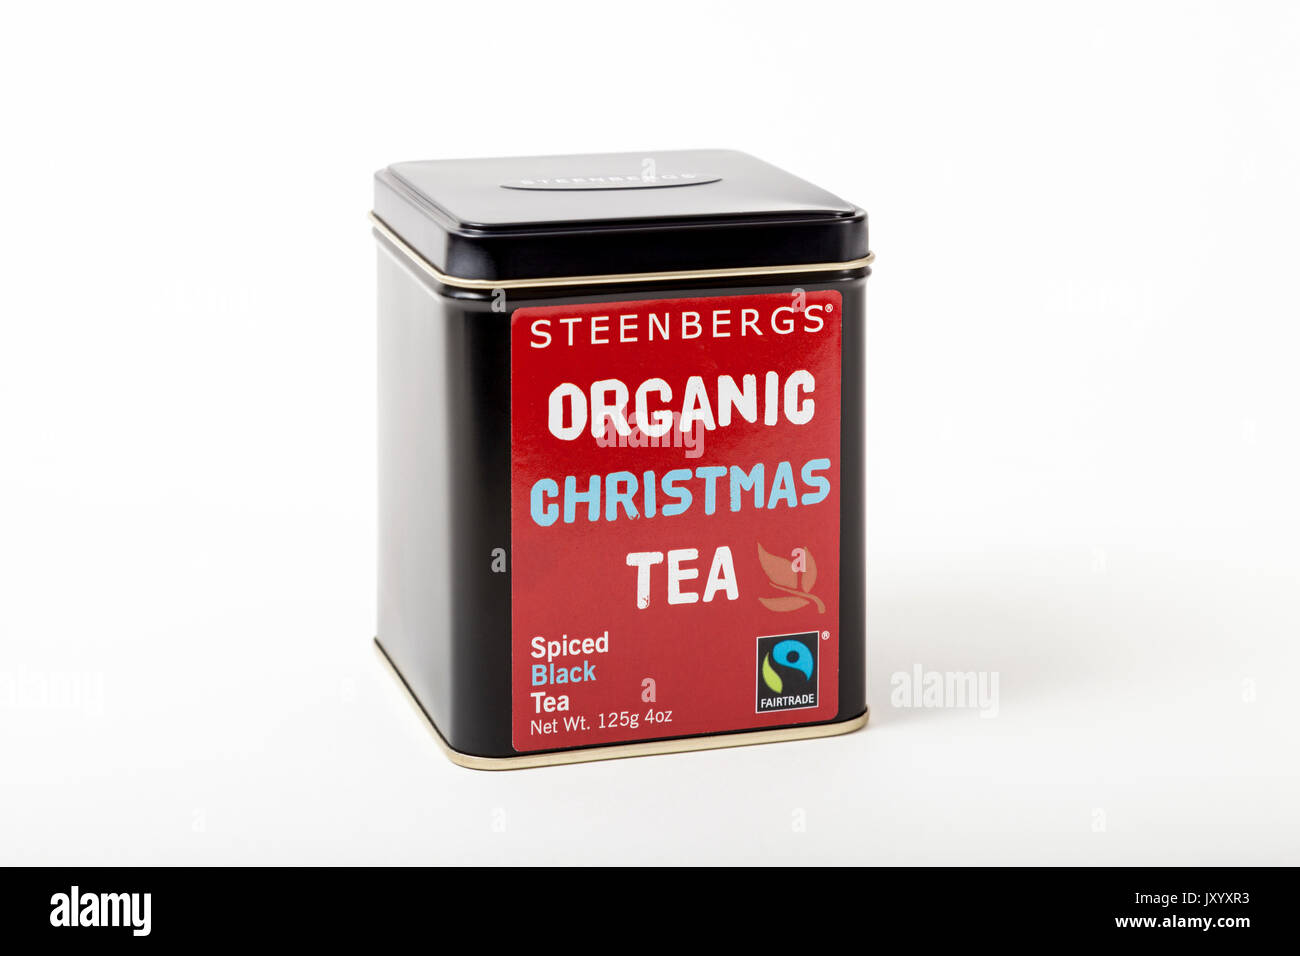 Fairtrade Kaffee. Tee Caddy von steenberg der Organischen Weihnachten Tee, ein Fairtrade-produkts gewürztem schwarzer Tee. Auf weissem Hintergrund Stockfoto